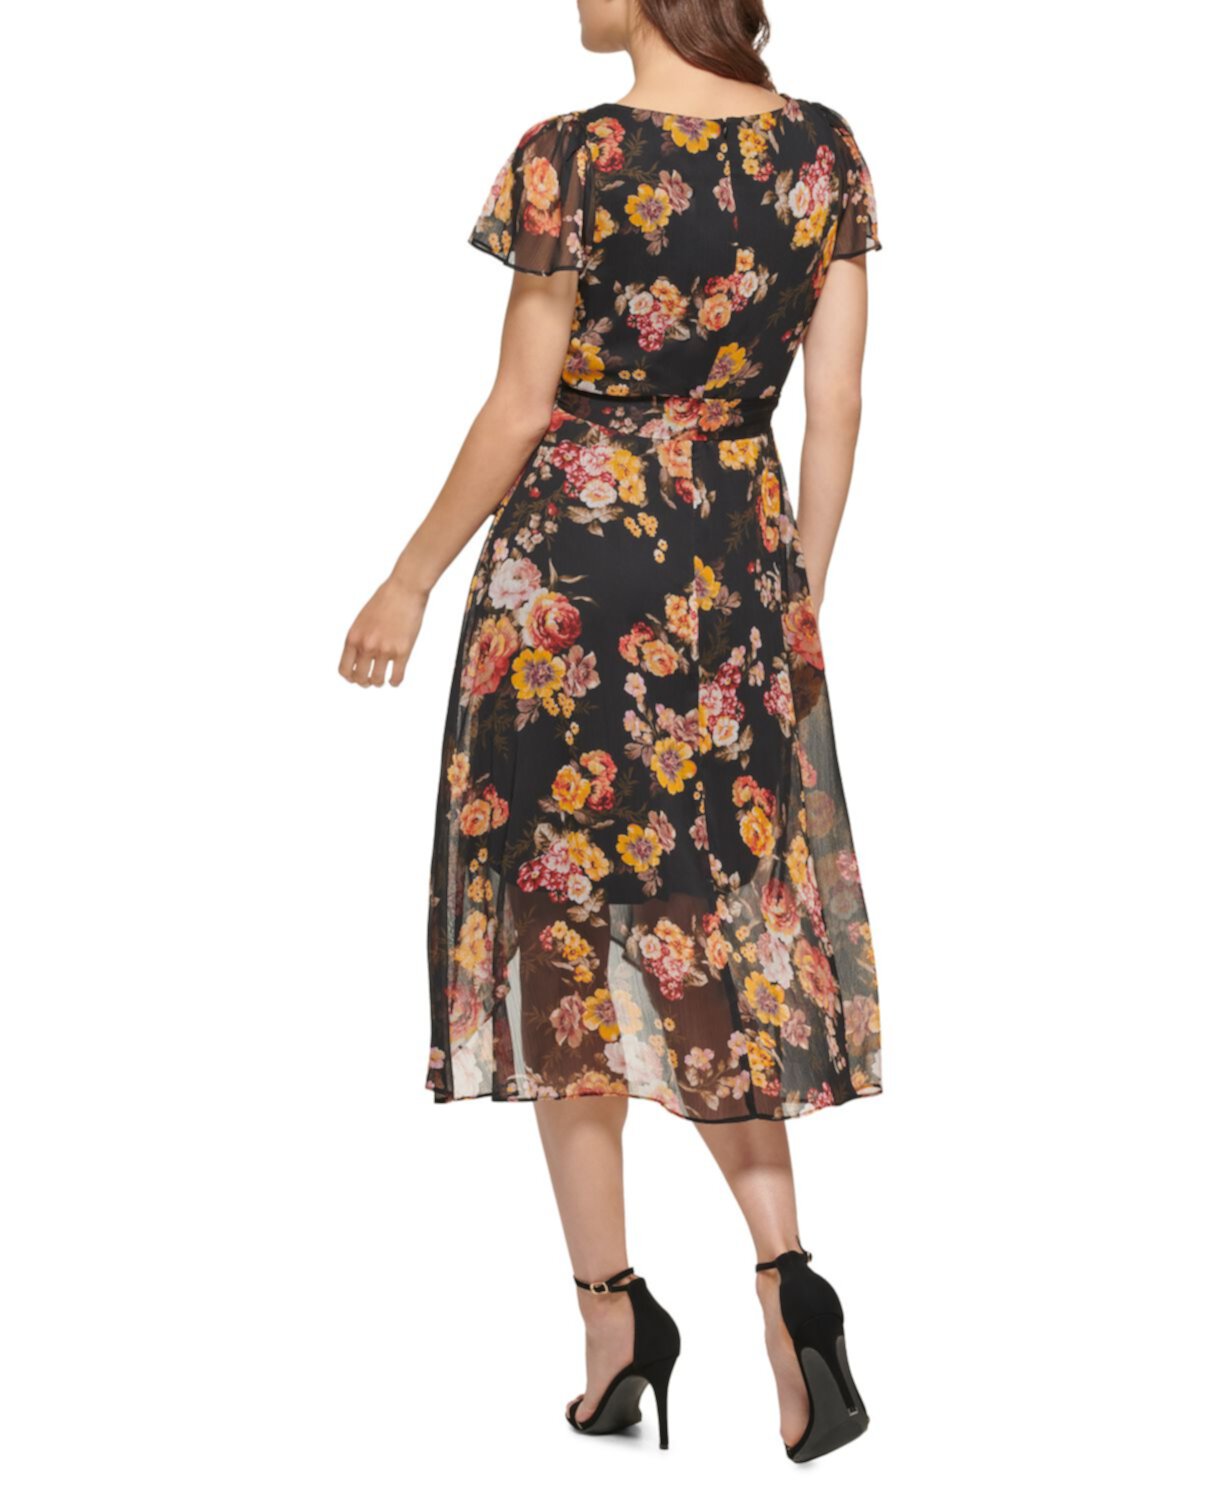 Шифоновое платье с запахом и цветочным принтом DKNY